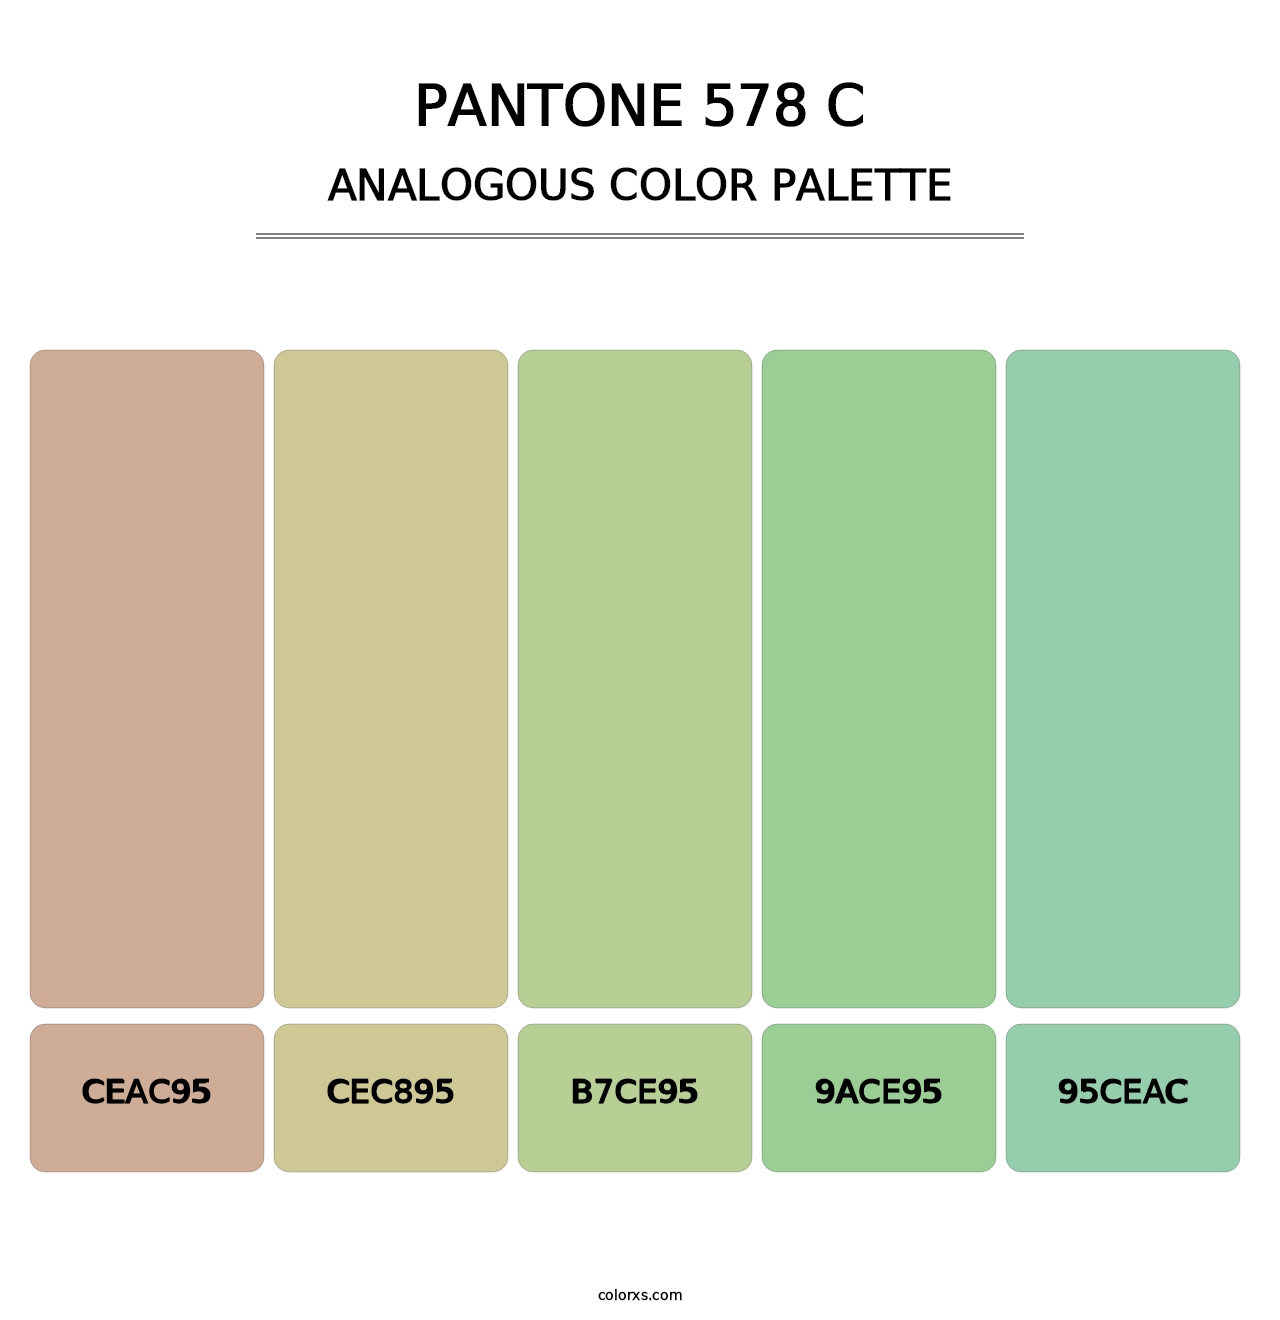 PANTONE 578 C - Analogous Color Palette